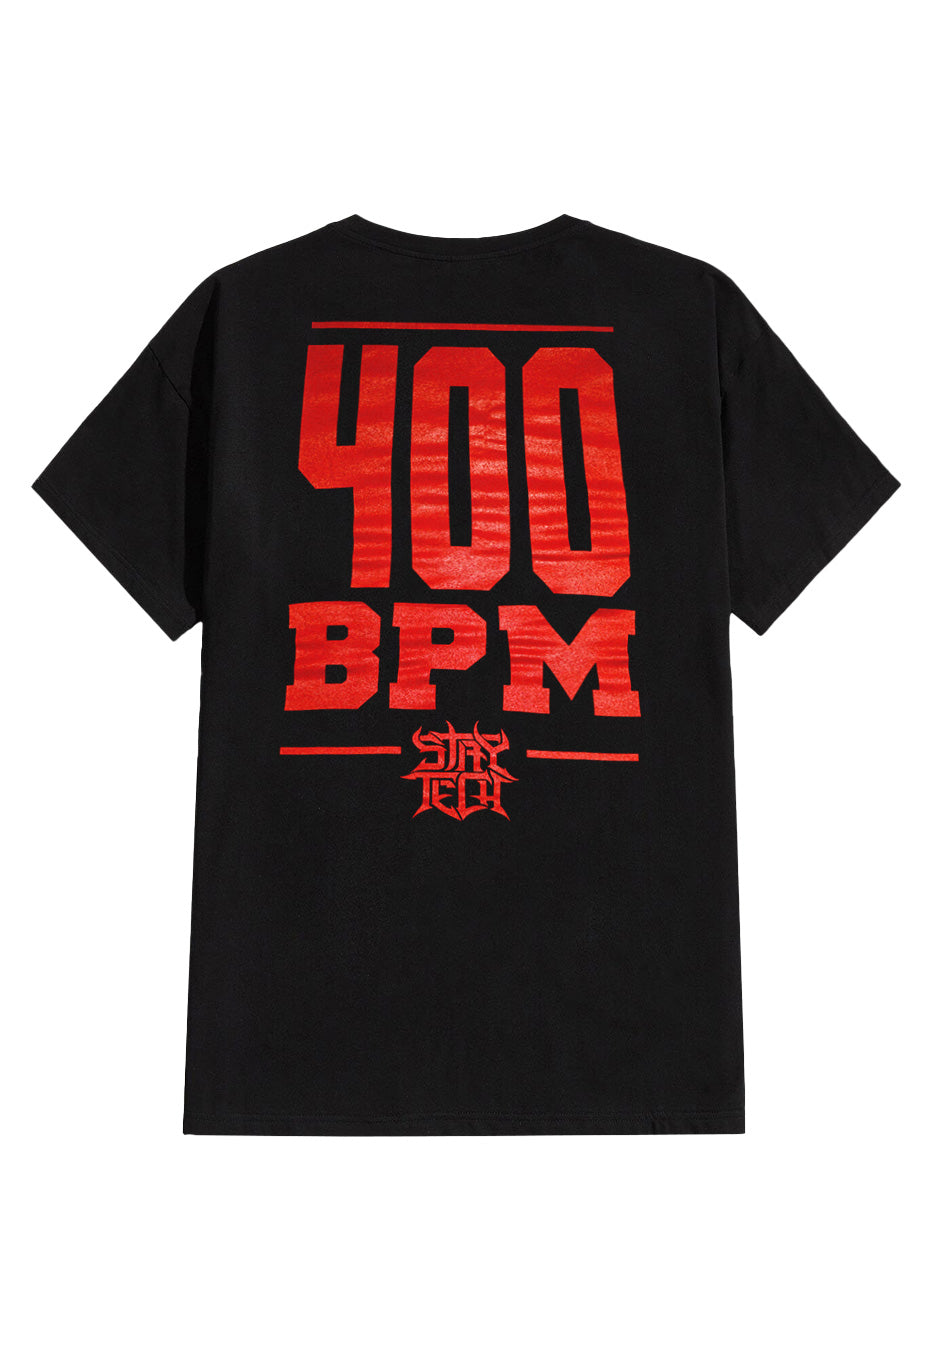 Archspire - Mind Blow 400 BPM - T-Shirt